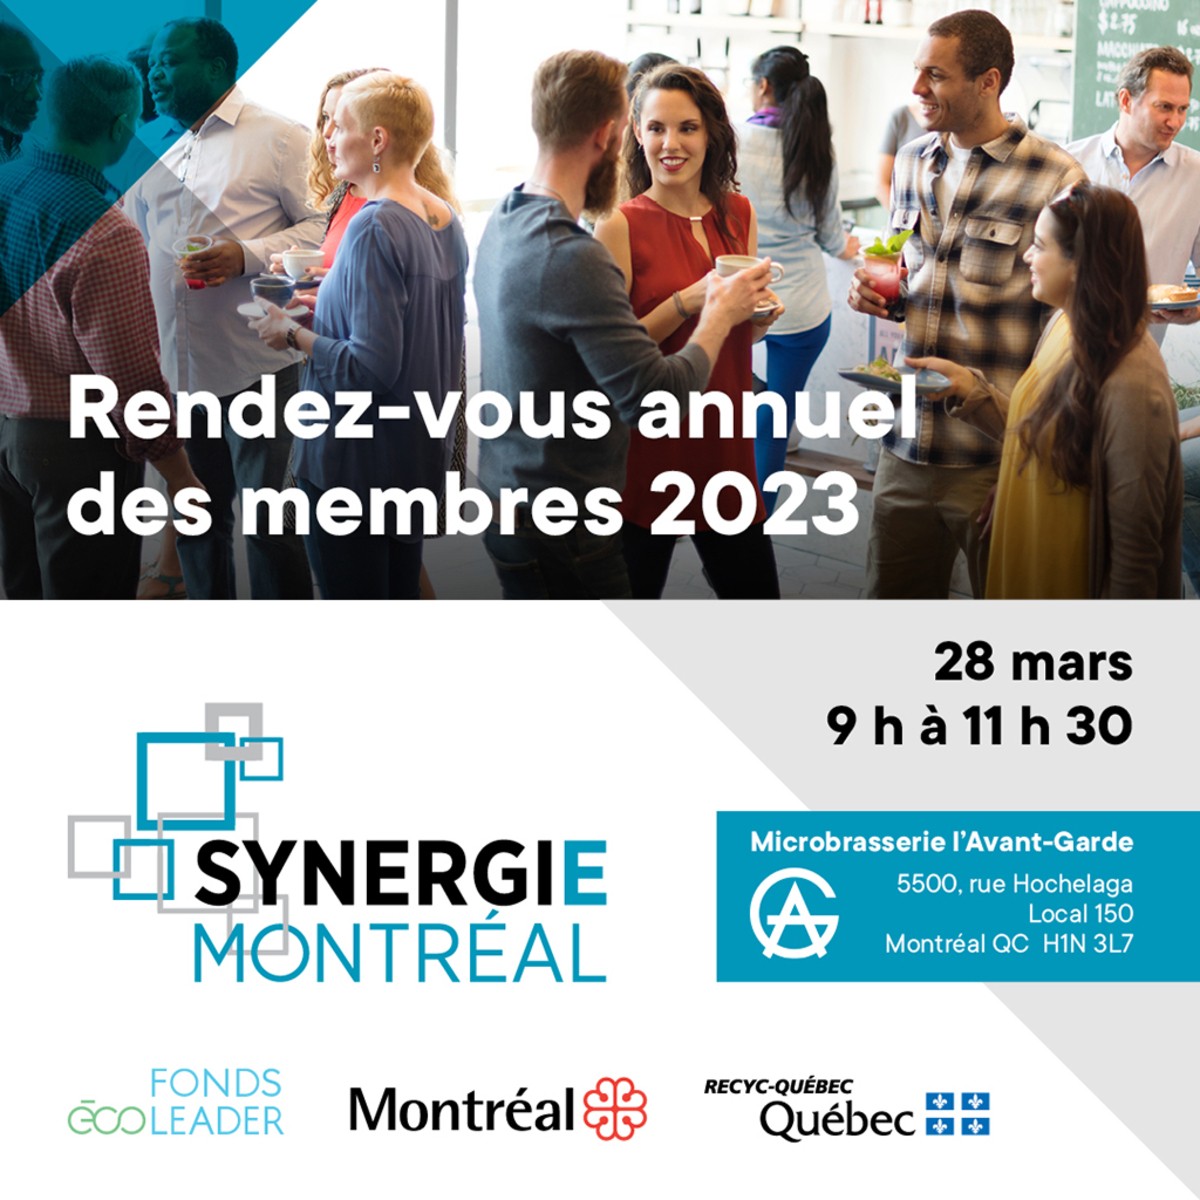 Synergie Montréal | Rendez-vous annuel des membres de la symbiose